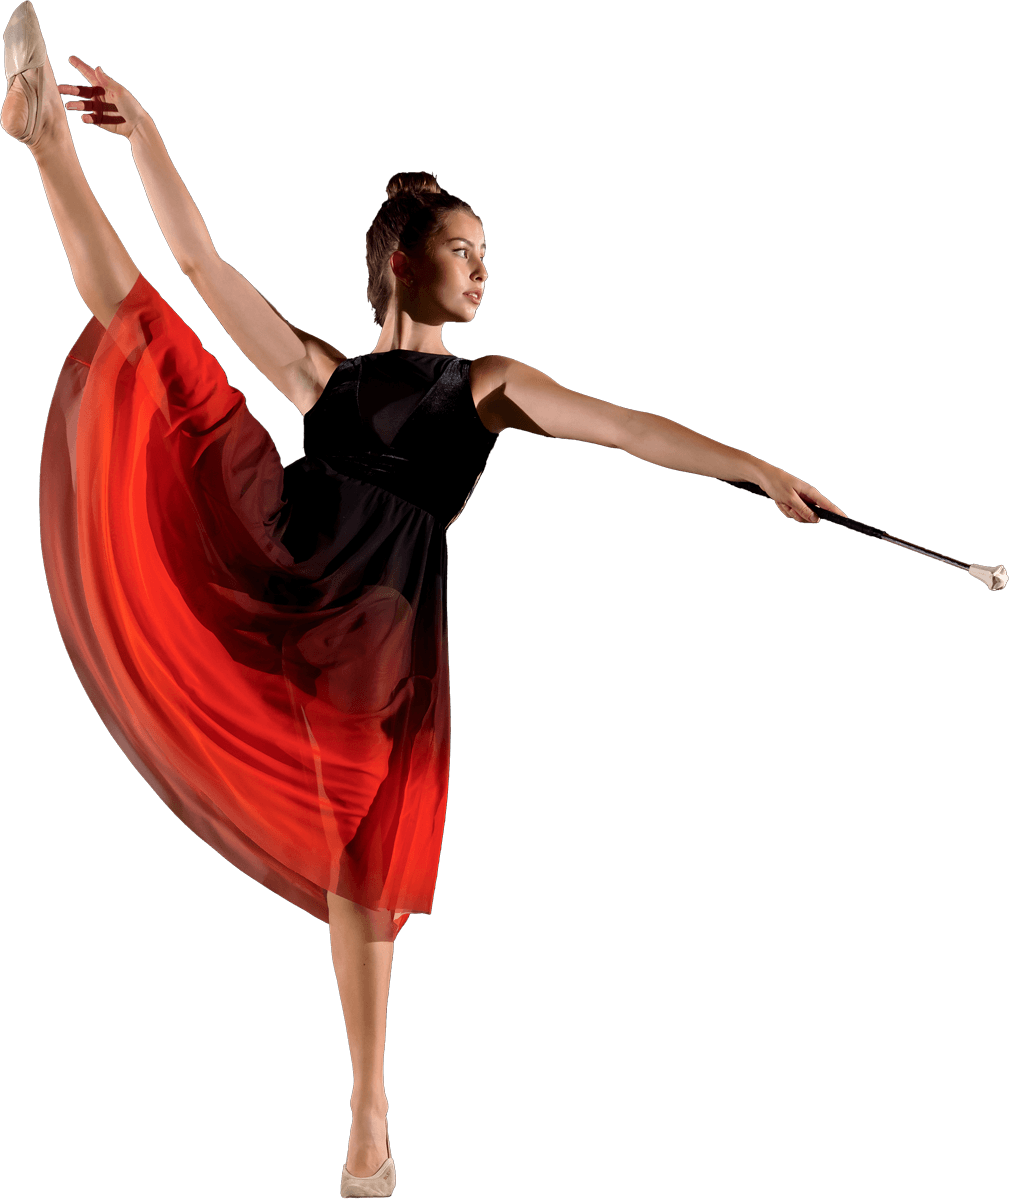 Twirlerin in langem Kleid zeigt Ballettübung